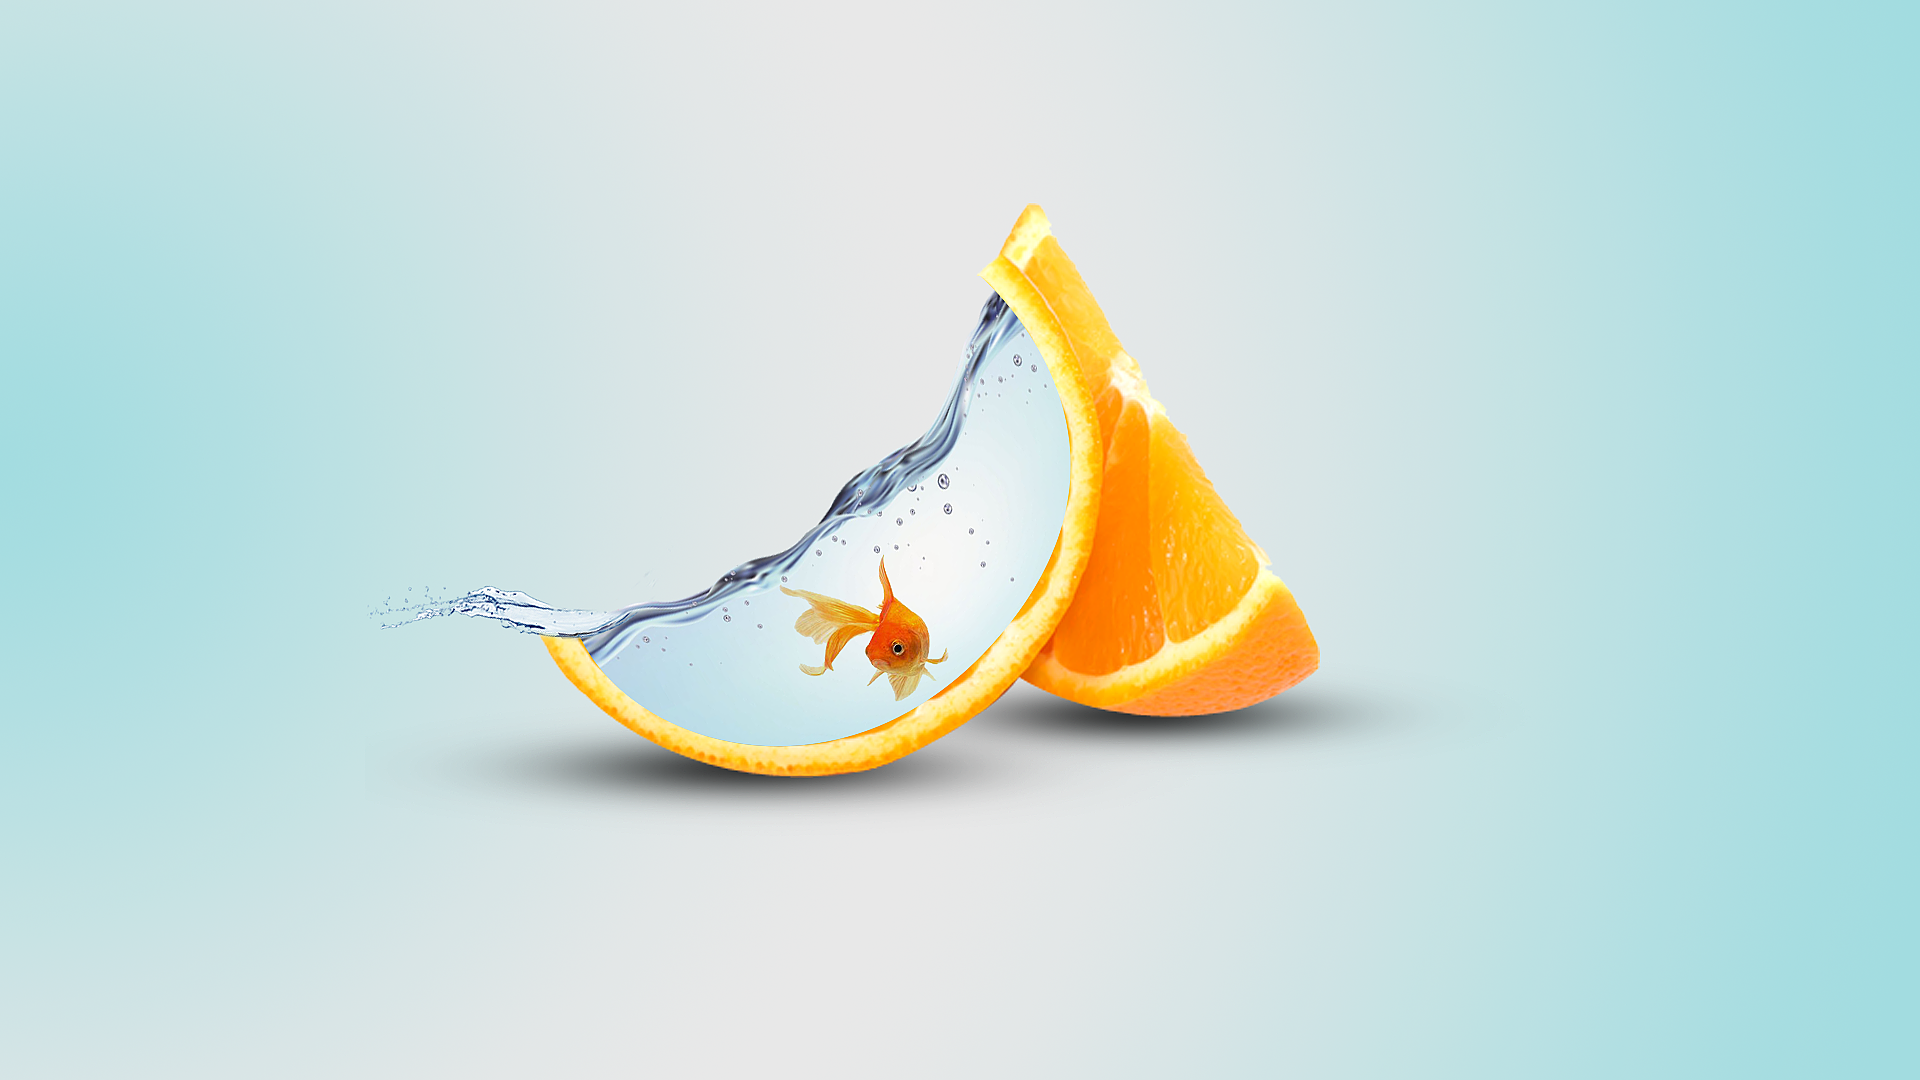 Wallpaper, orange fruit, fish, digital art, water 1920x1080